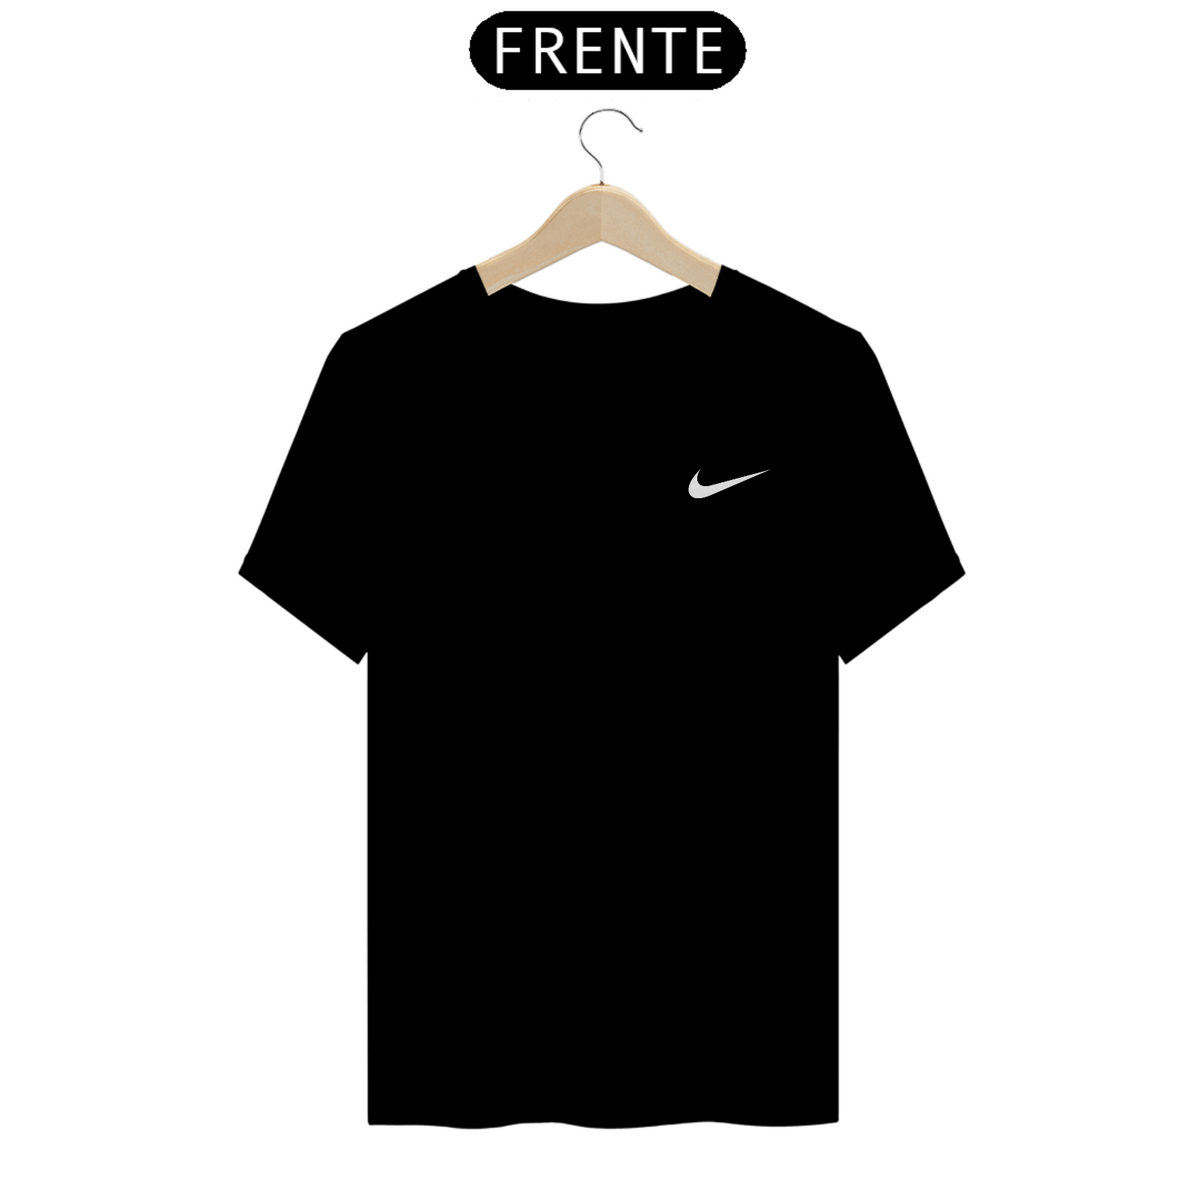 Nome do produto: Camisa Nike